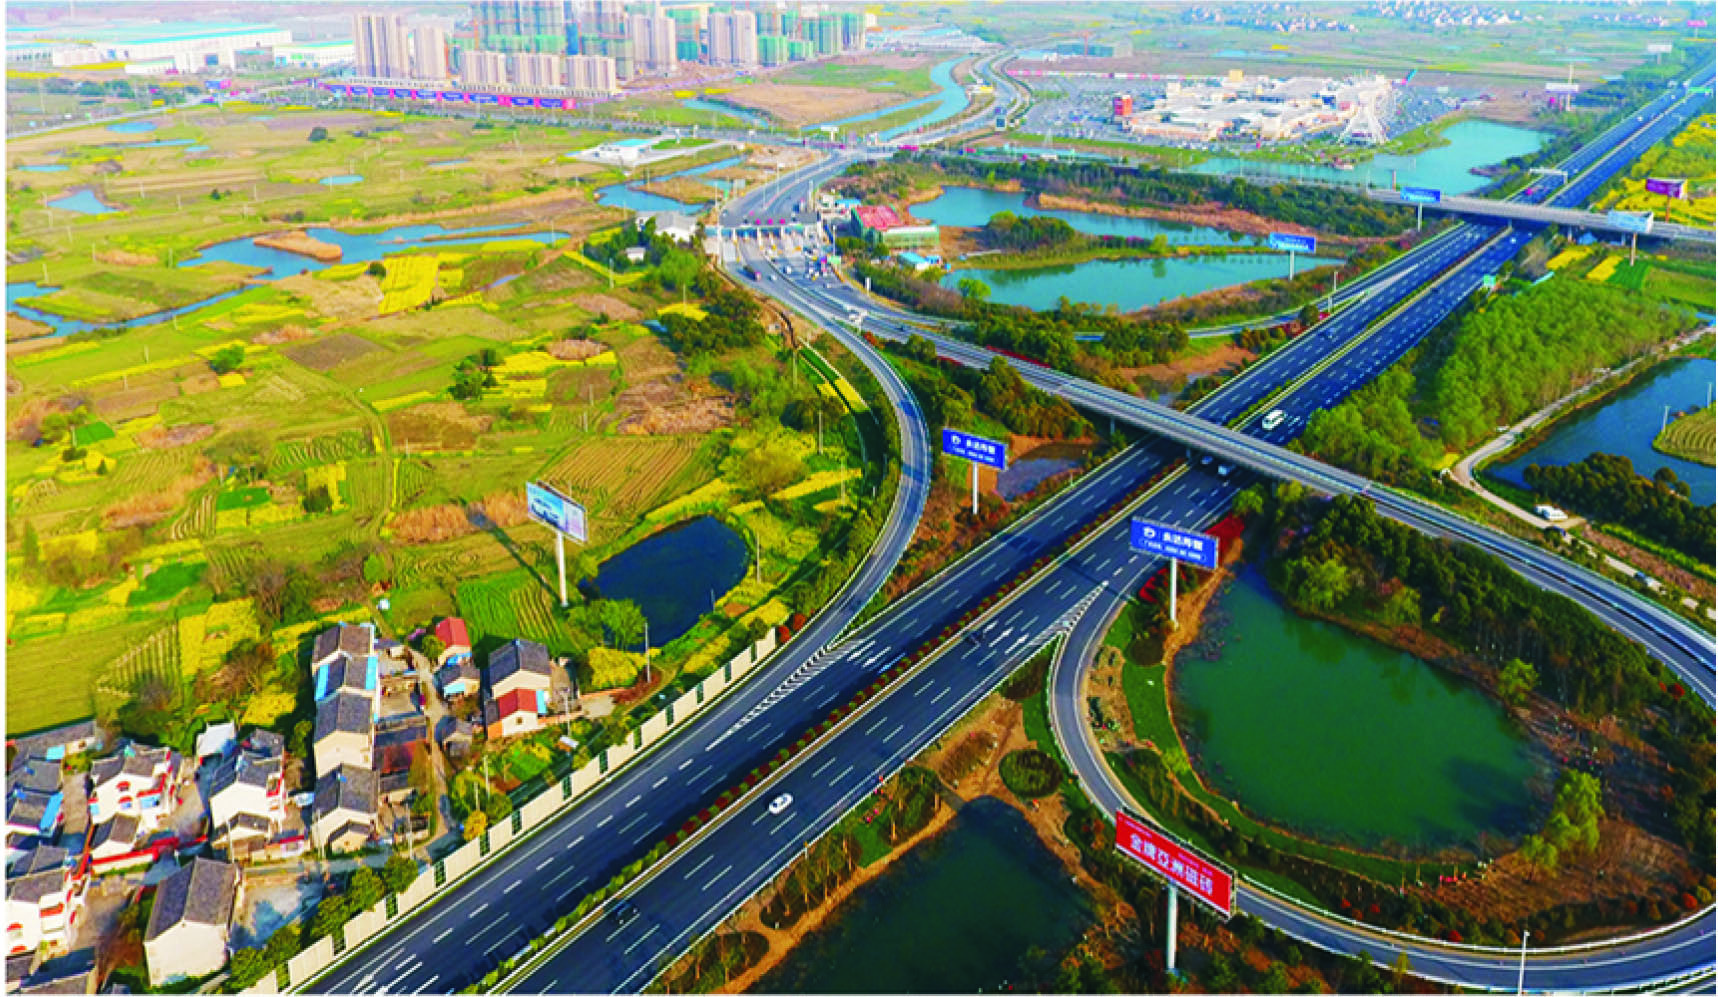 郭庄镇作为句容市对接南京的高新产业集聚区,持之以恒地贯彻落实好